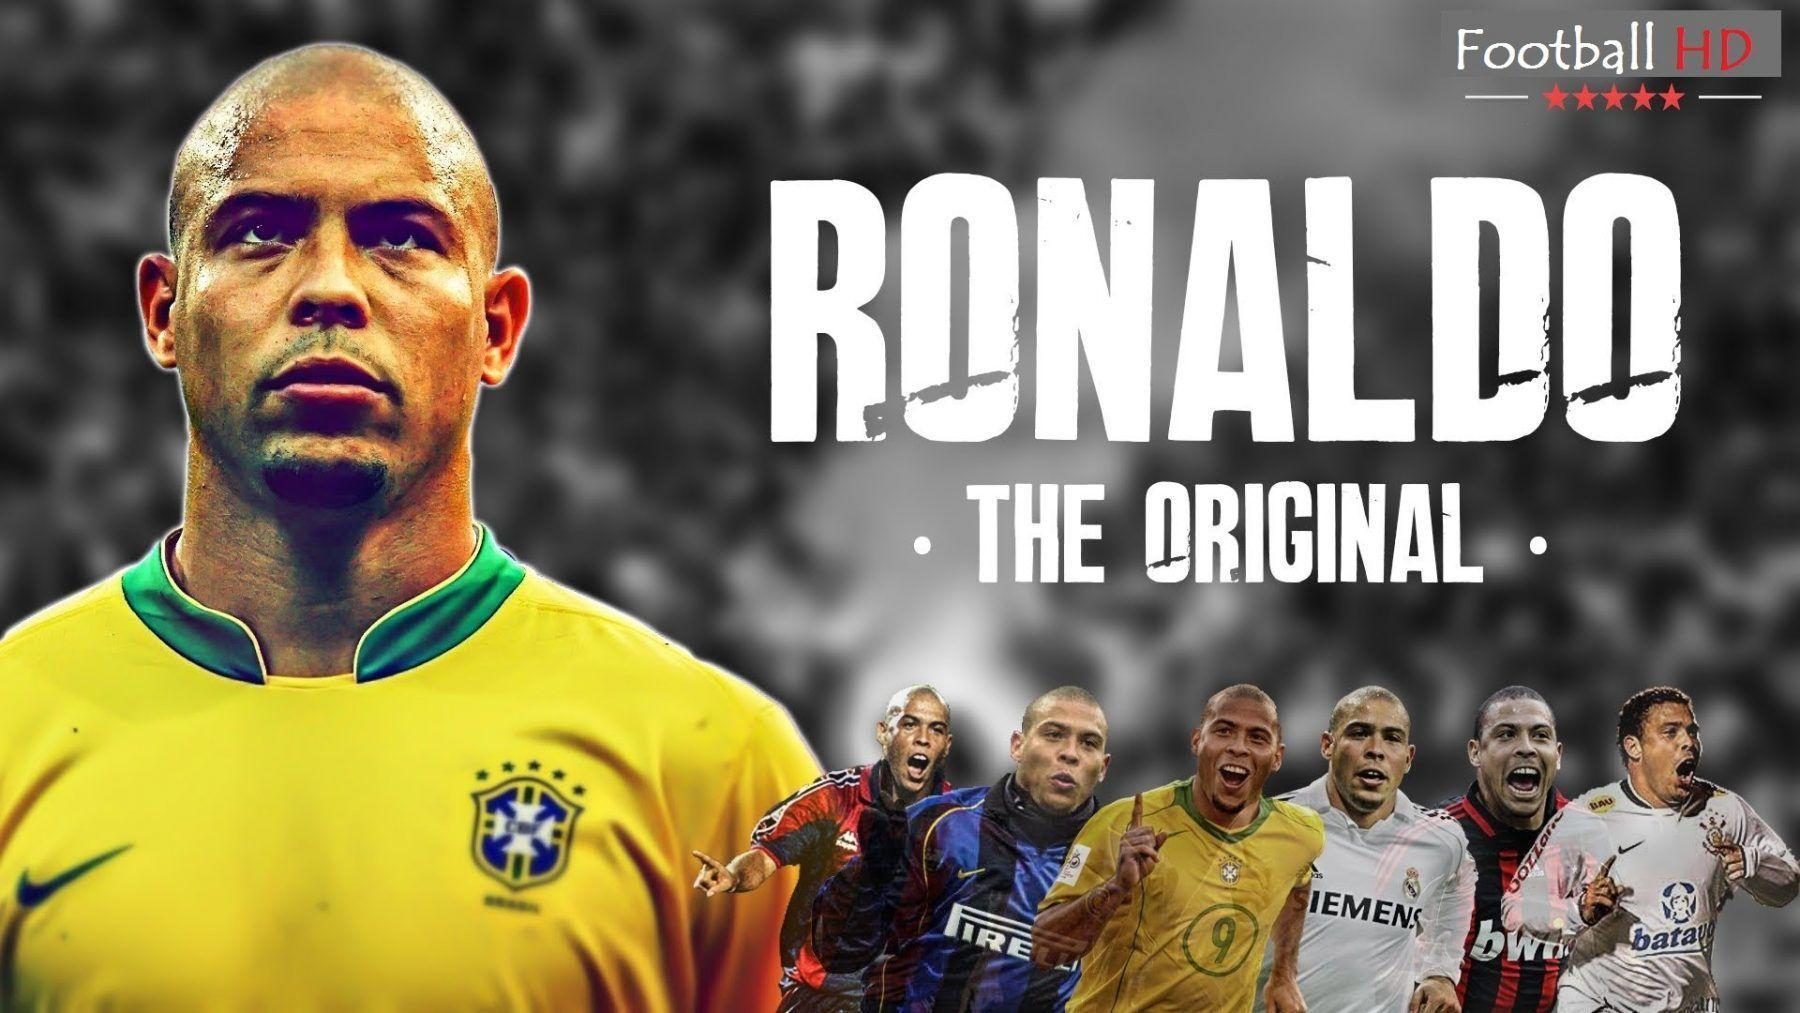 Ronaldo De Lima là một trong những cầu thủ hàng đầu của thế giới bóng đá thập niên